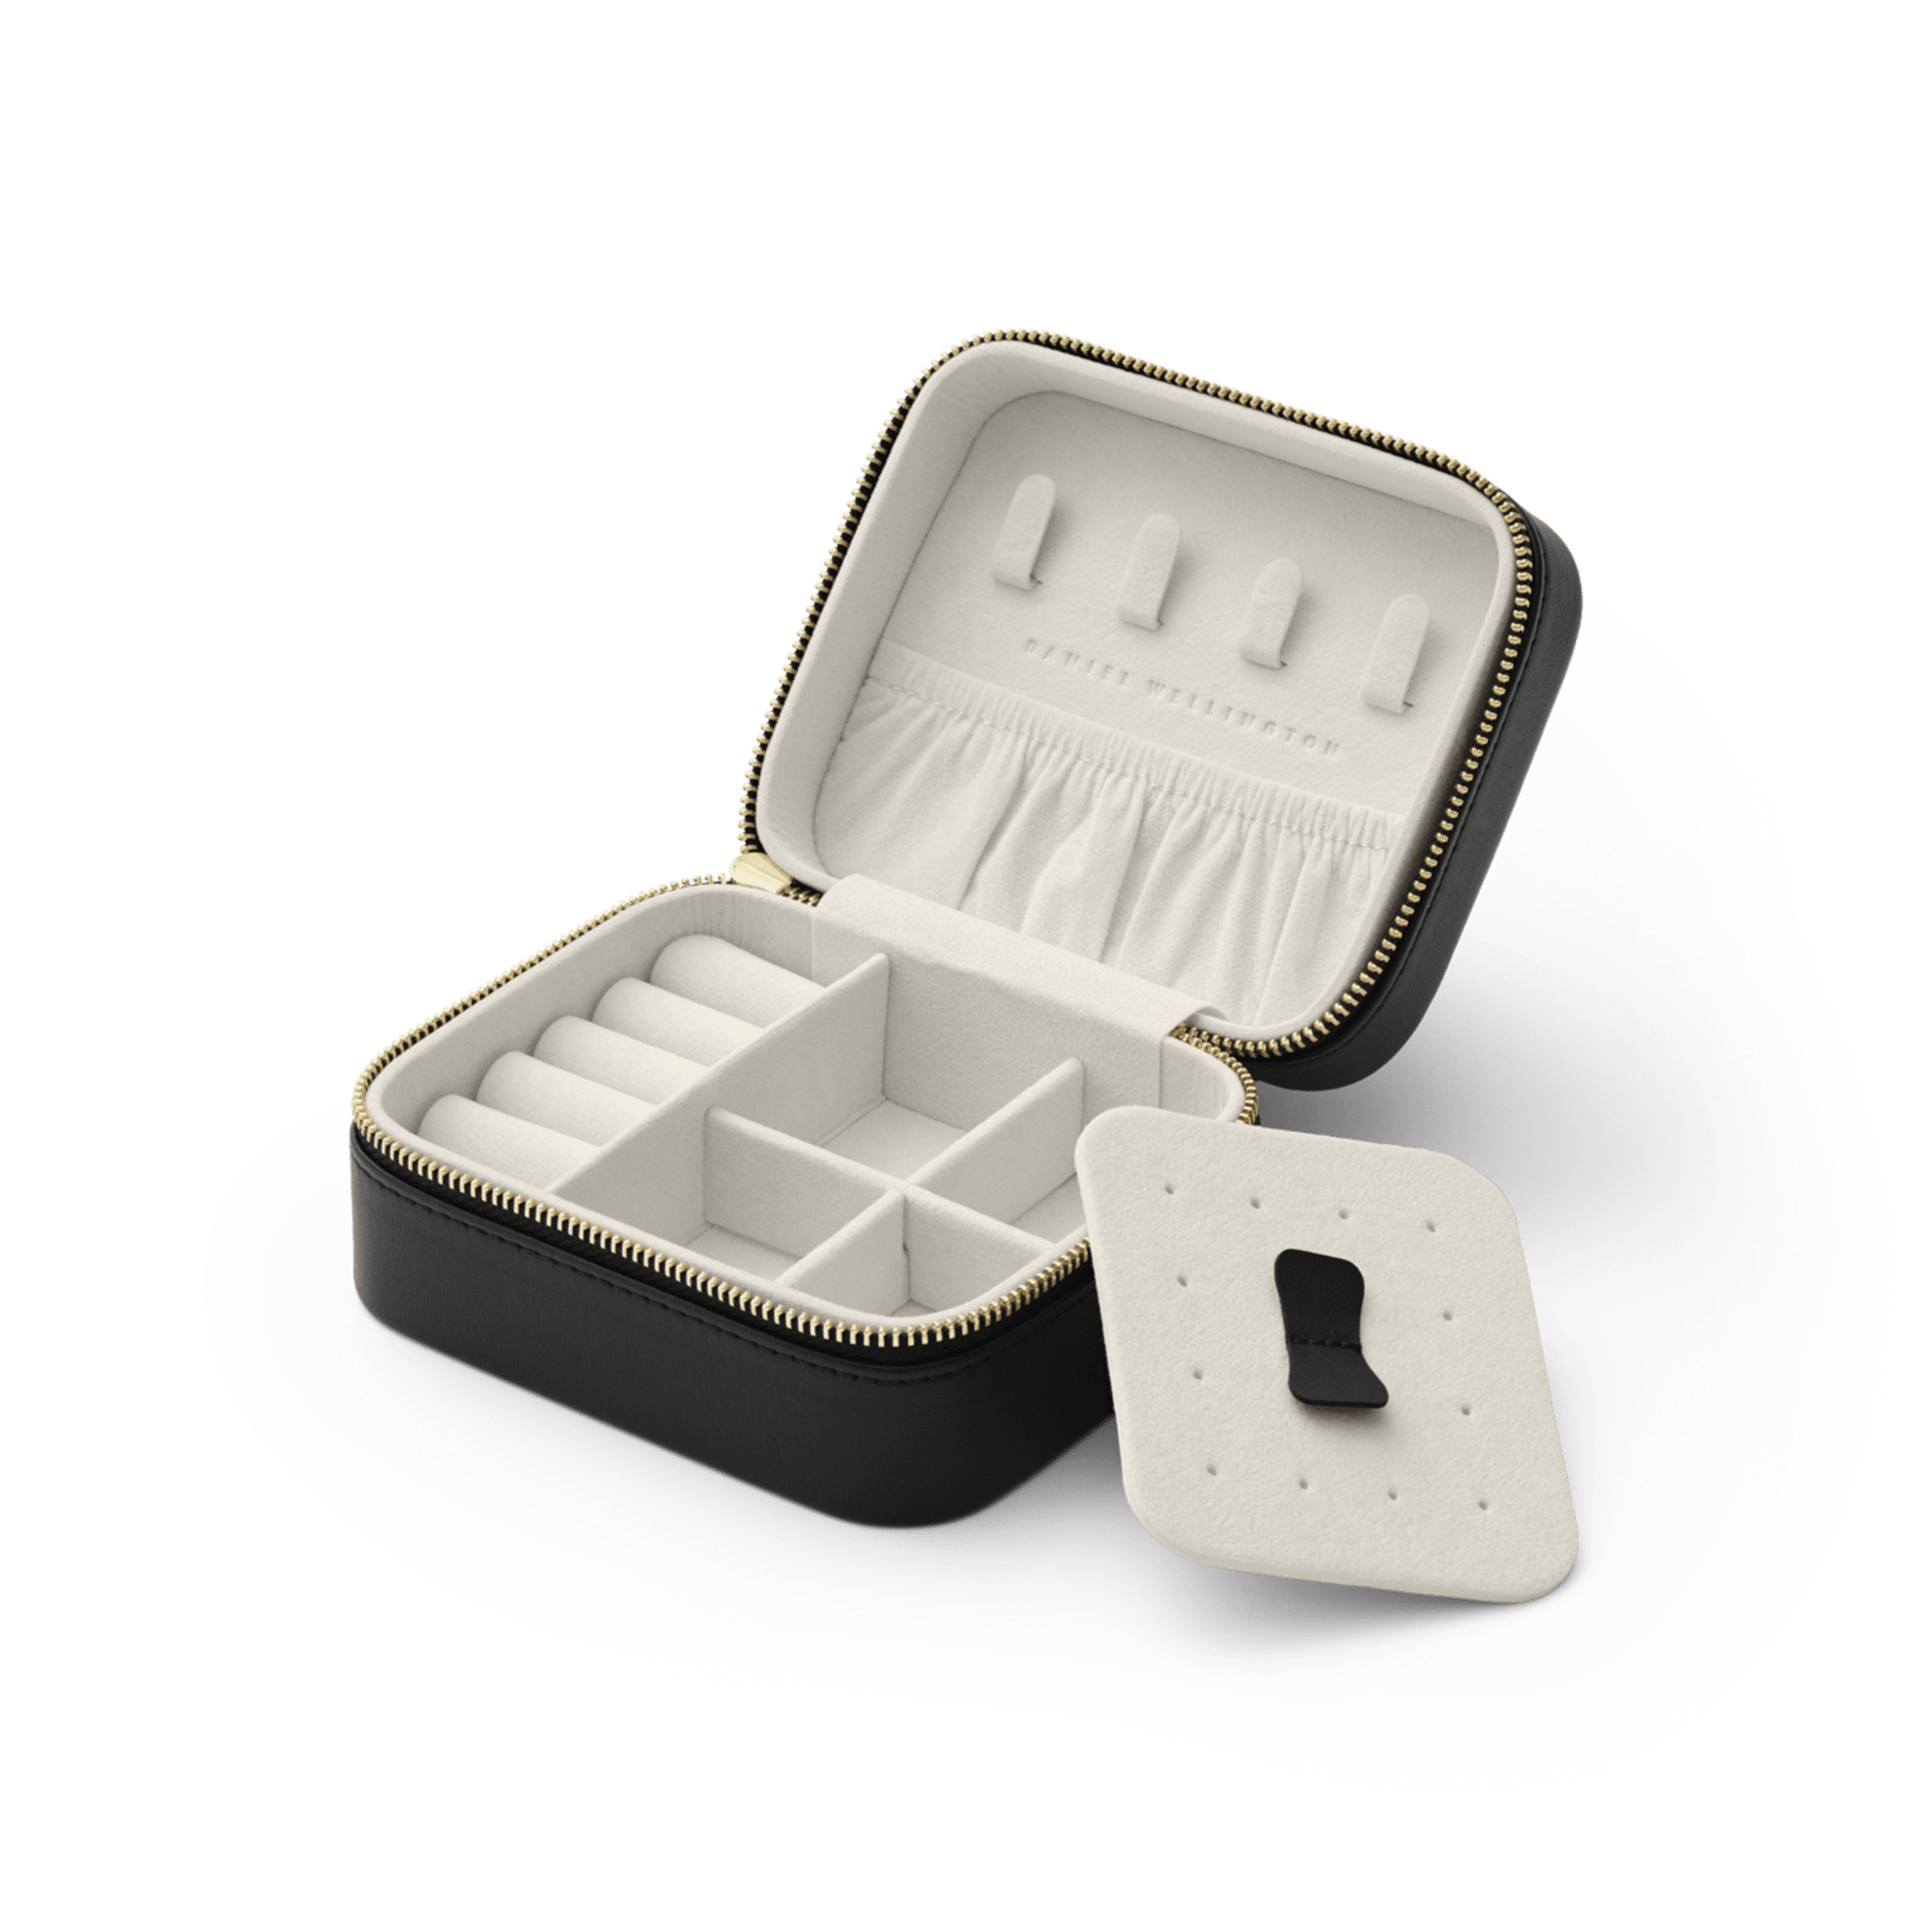 Travel Jewelry box – Daniel Wellington